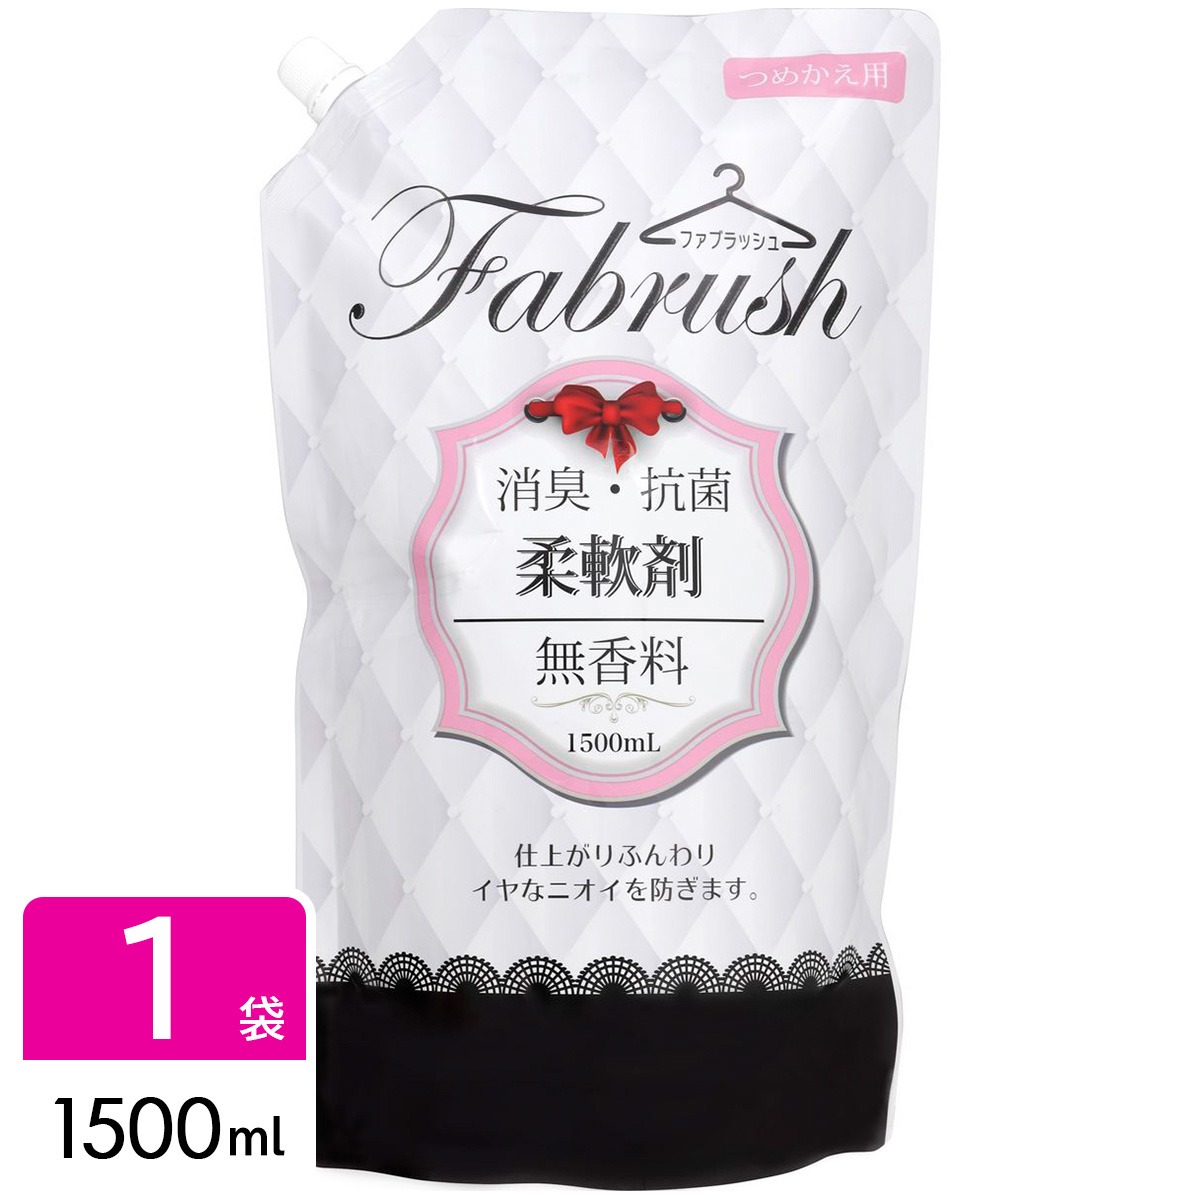 ファブラッシュ fabrush 柔軟剤 無香料 ロケット石鹸 詰め替え 大容量 1500ml